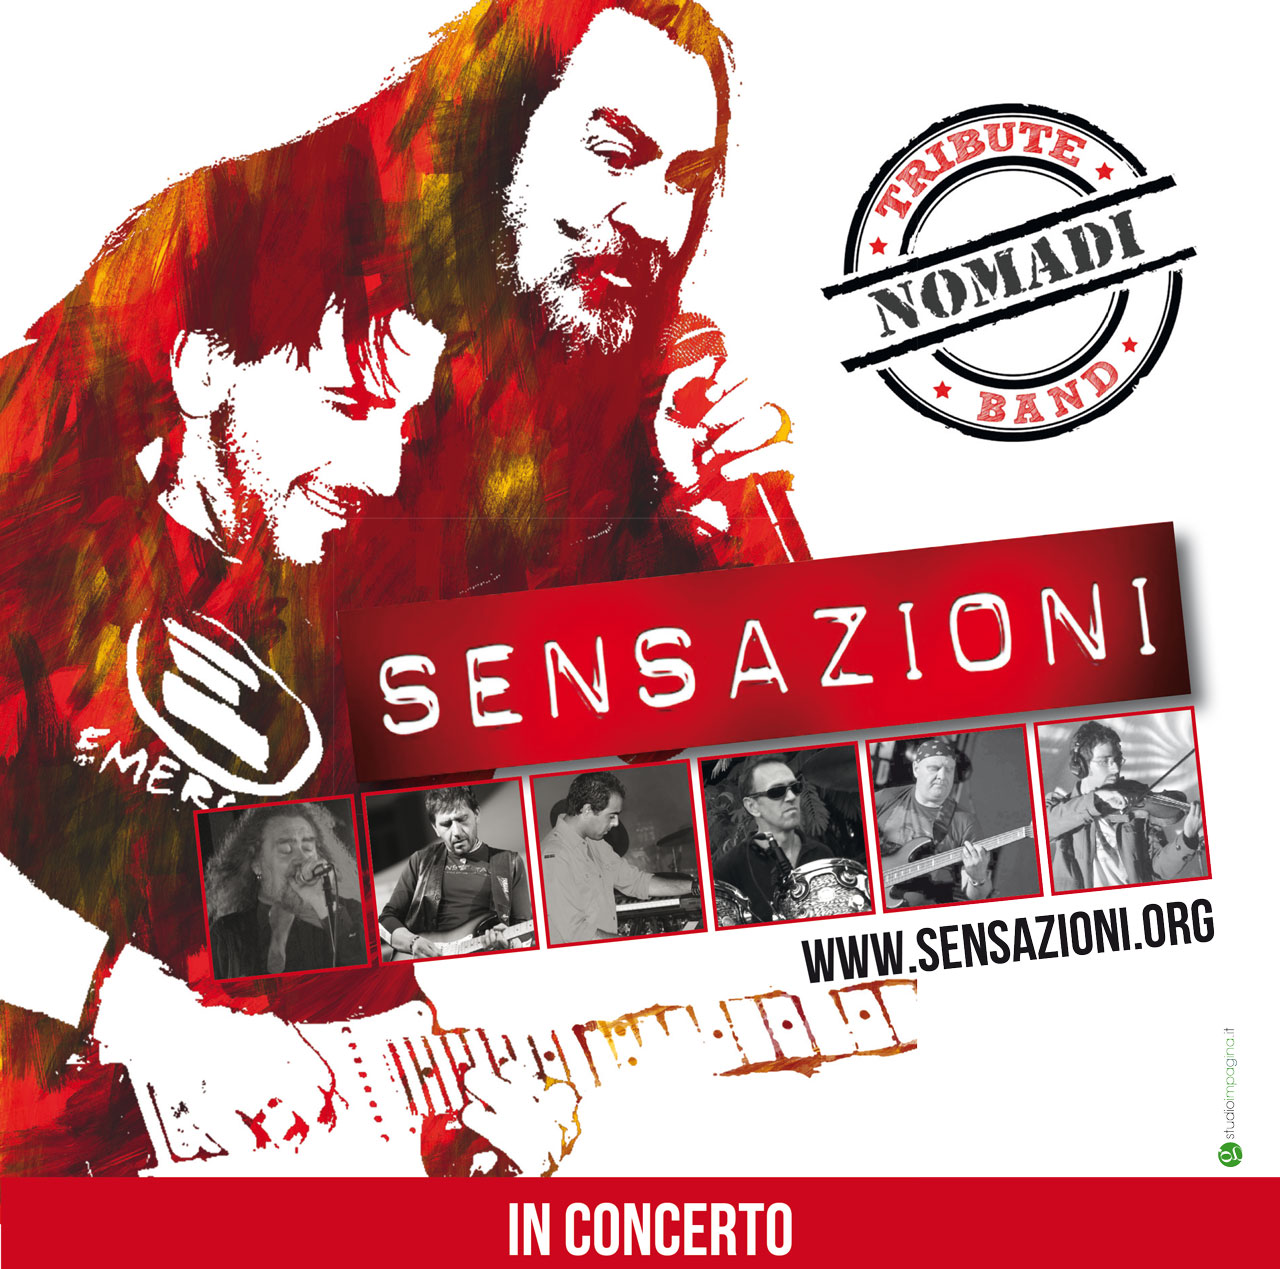 Sensazioni, la cover band dei Nomadi, a Borgo San Dalmazzo.